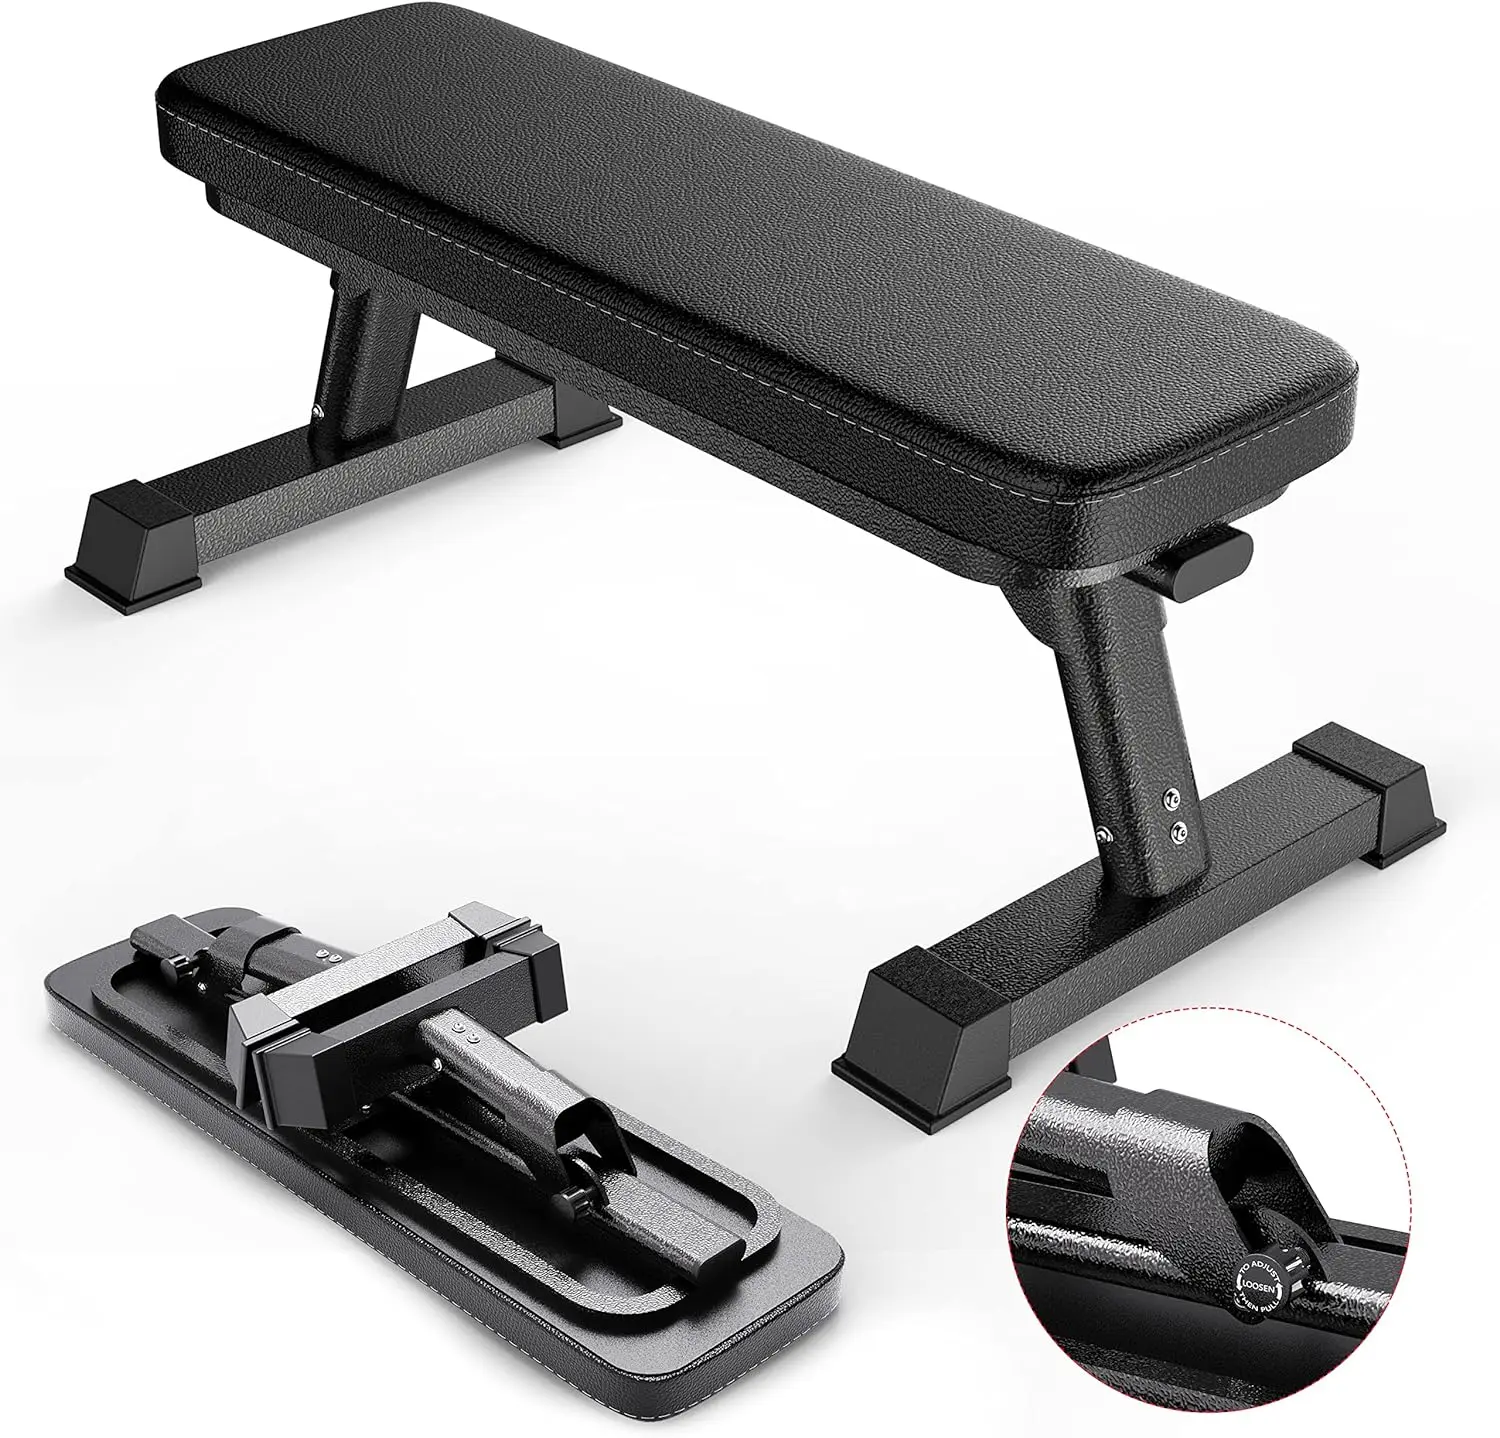 

Качественная Складная плоская скамья формы для тренировки веса и упражнений Ab. Идеальная Складная Скамья для регулировки Du